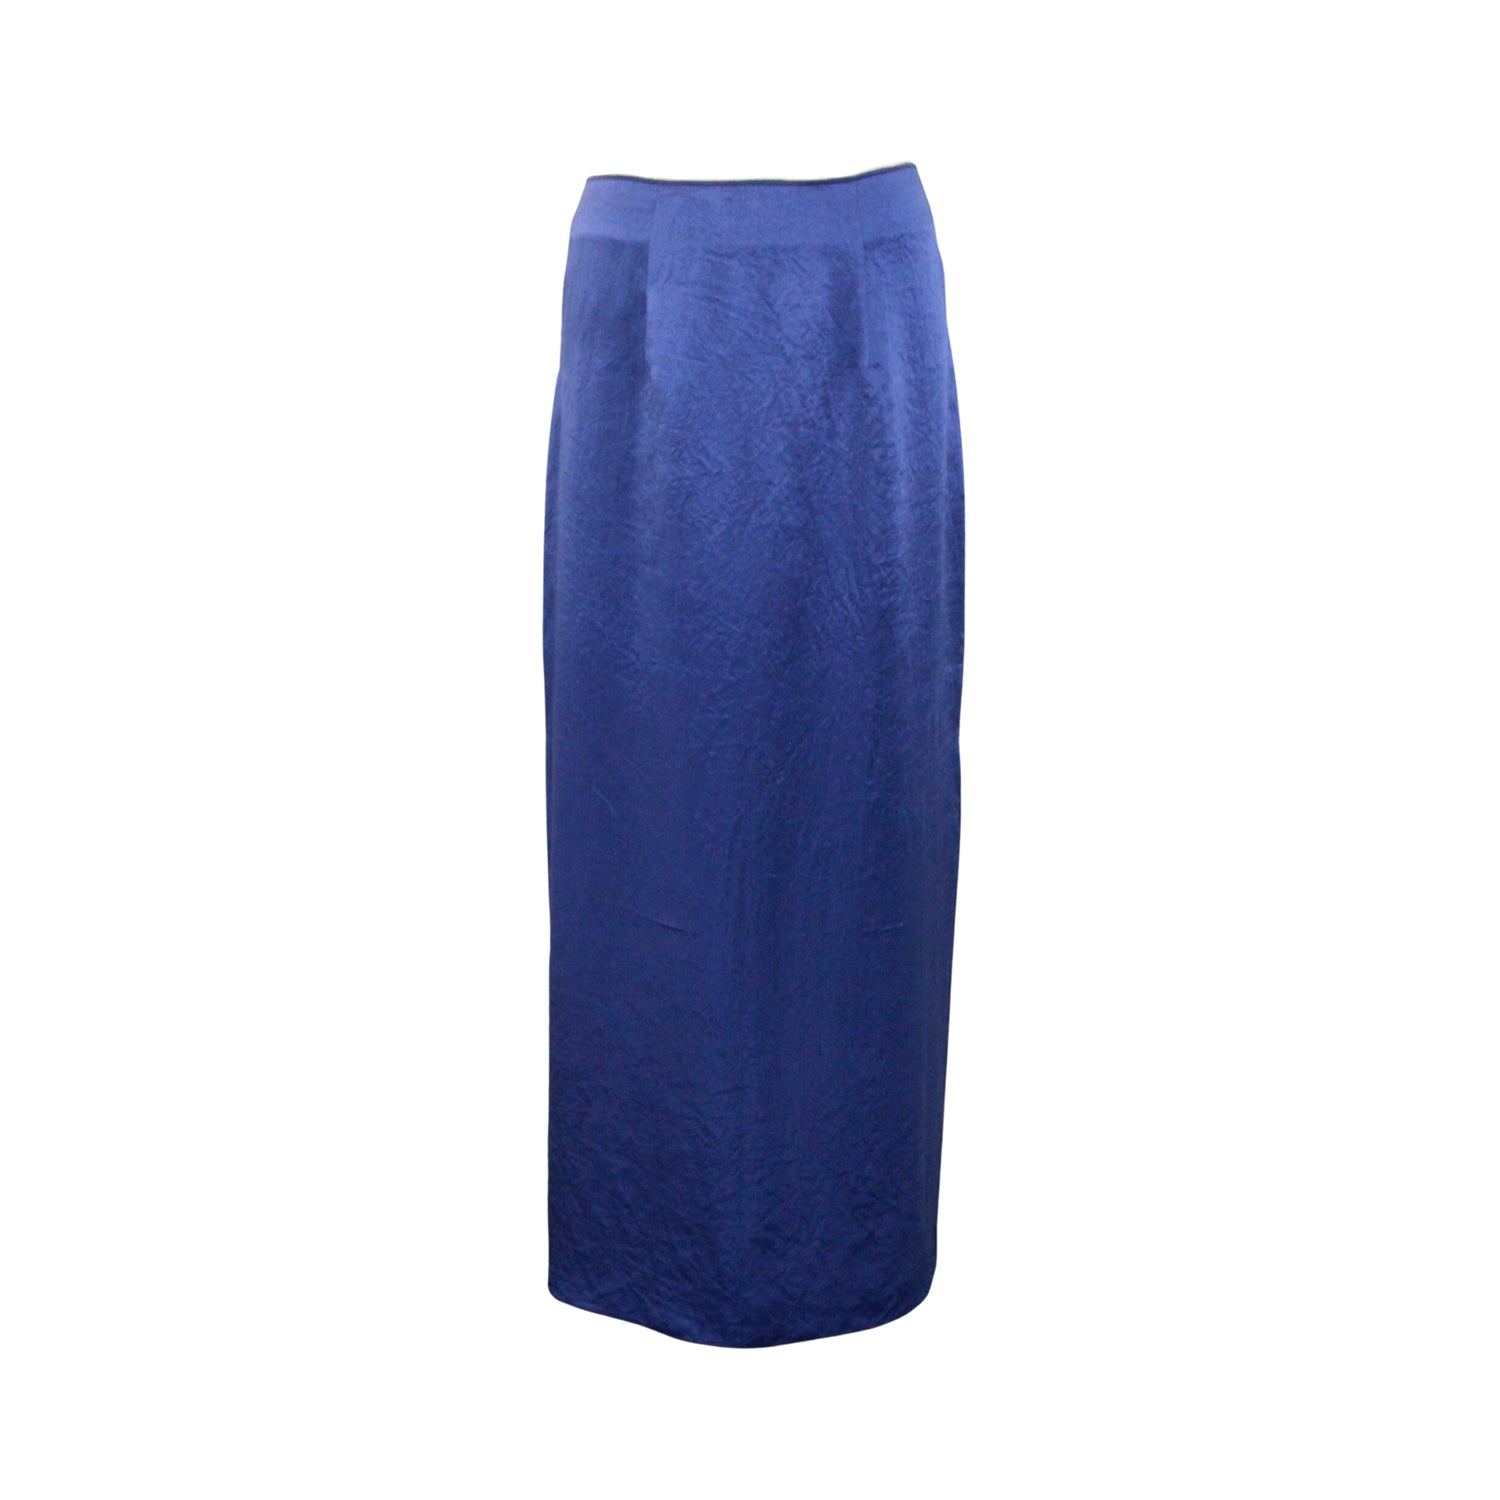 Find Your Indigo Blue Aurora Skirt